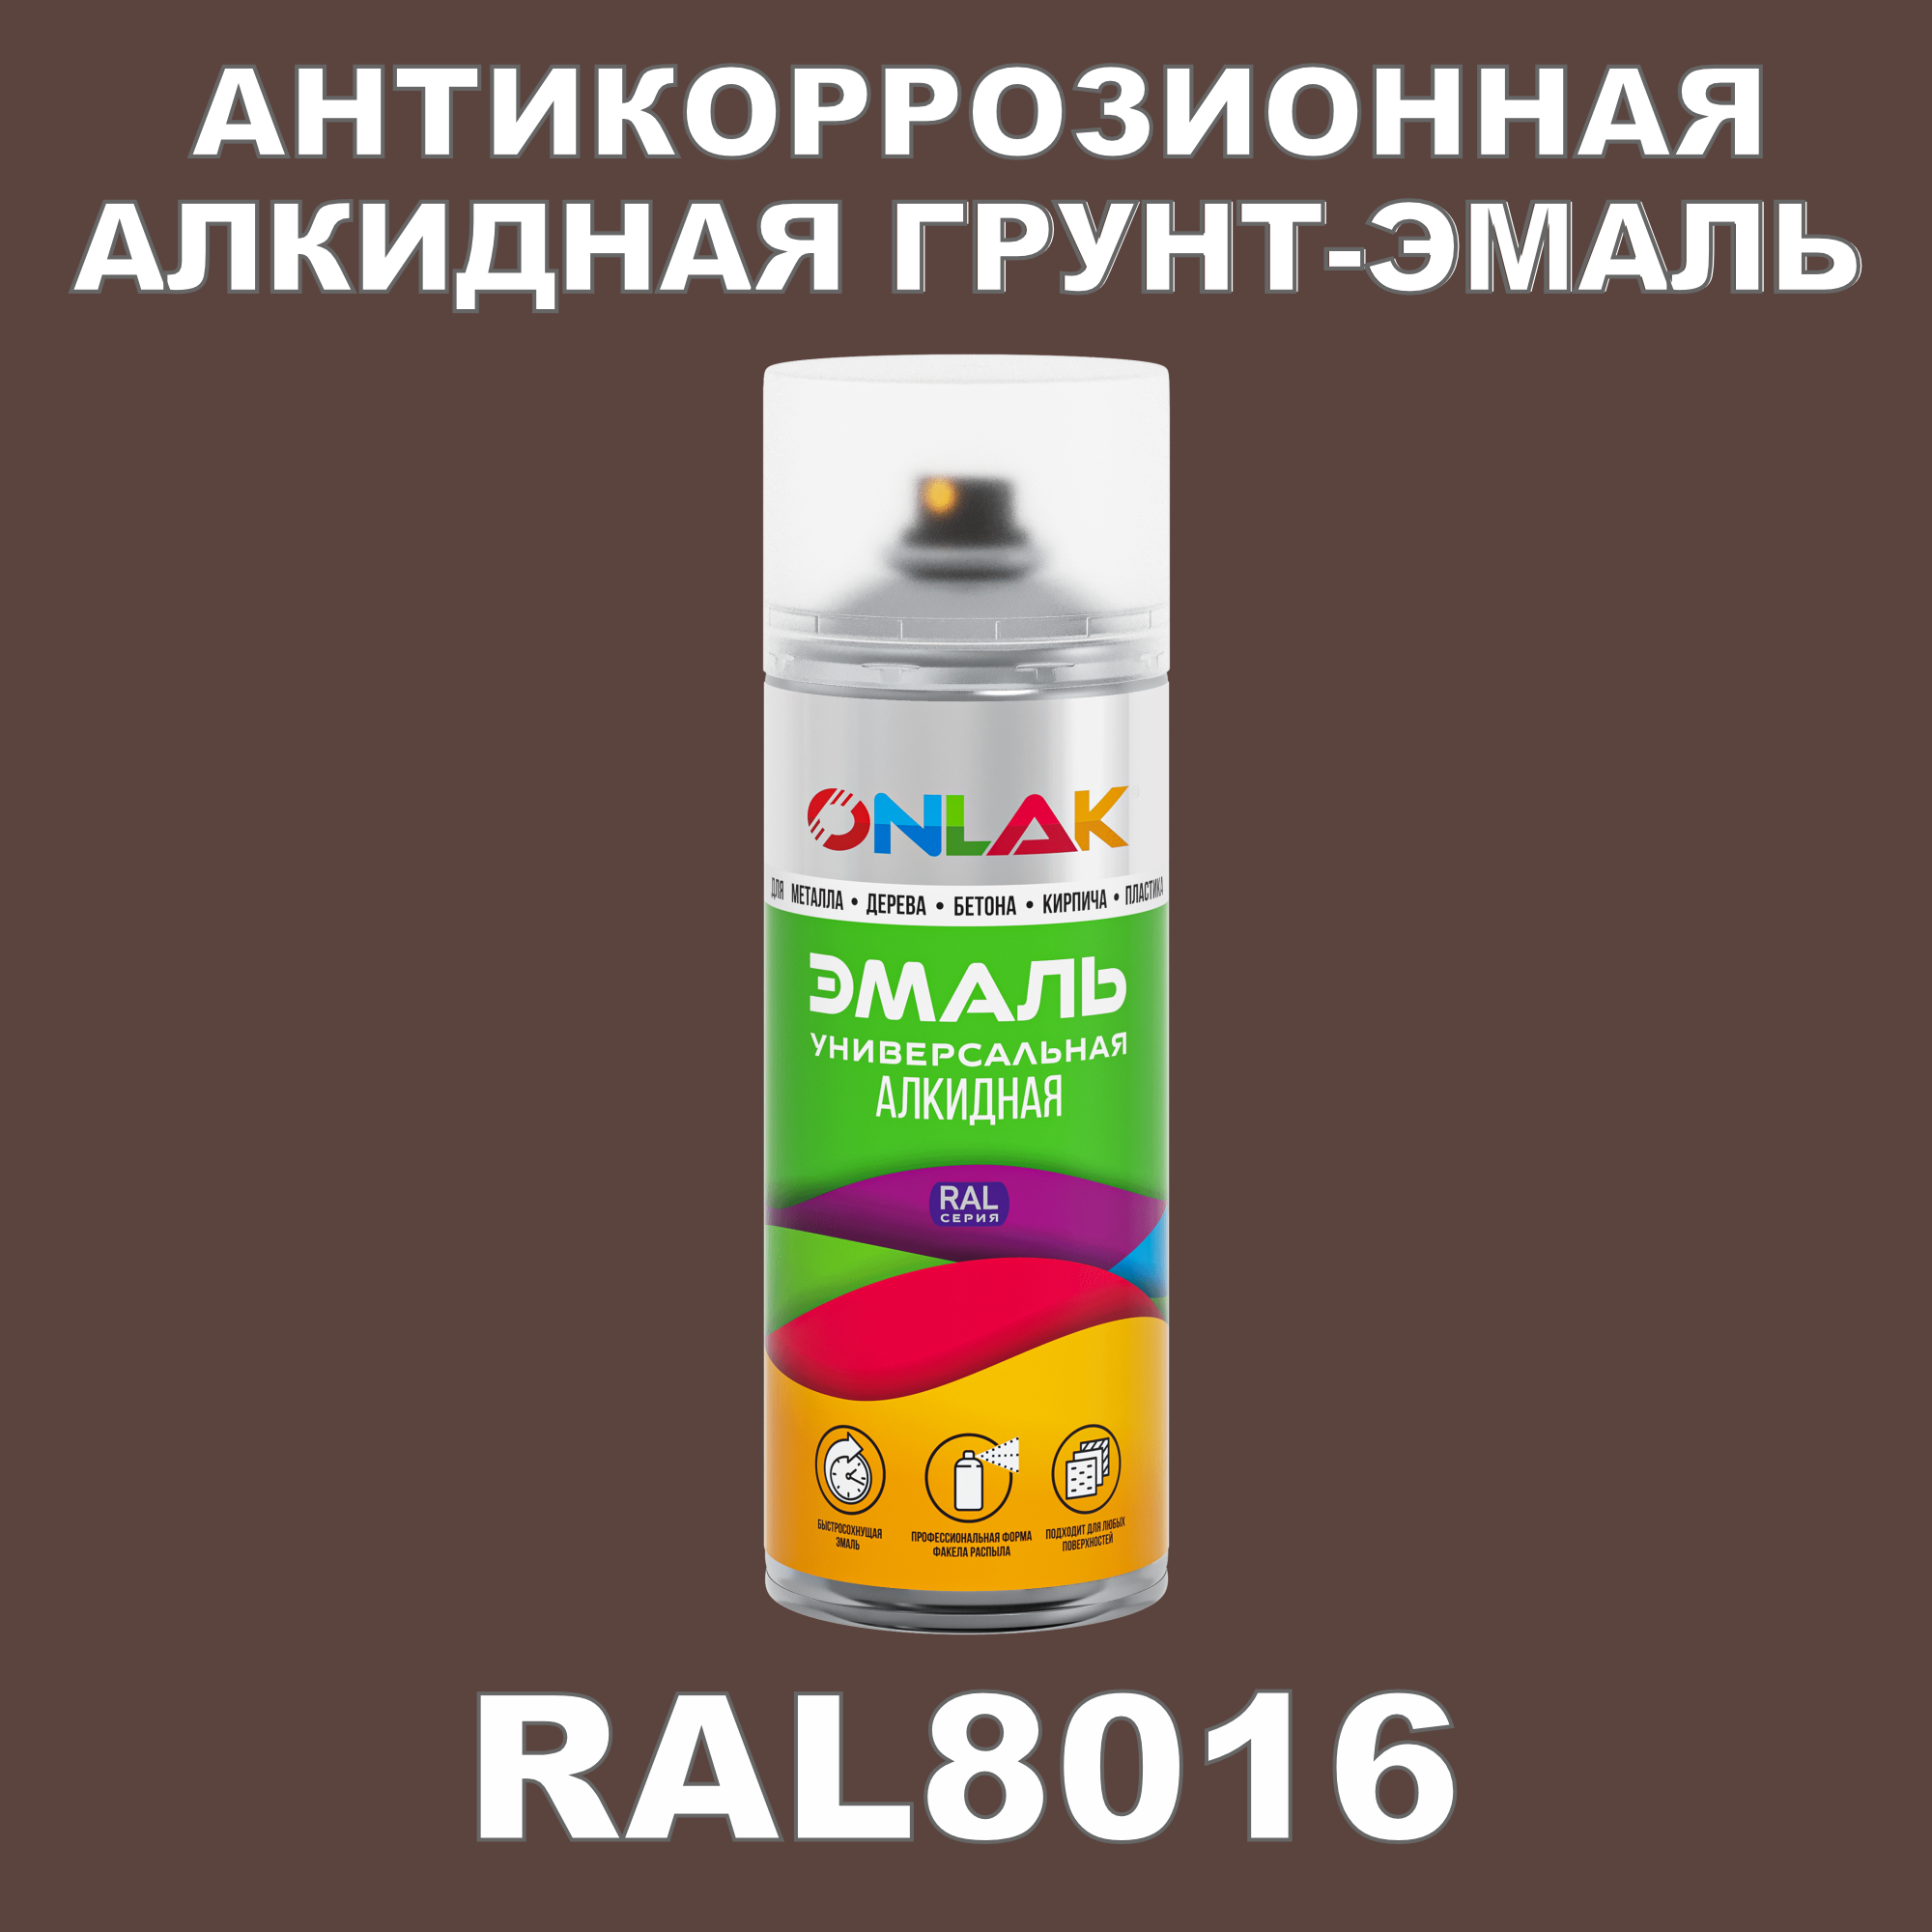 Антикоррозионная грунт-эмаль ONLAK RAL8016 полуматовая для металла и защиты от ржавчины